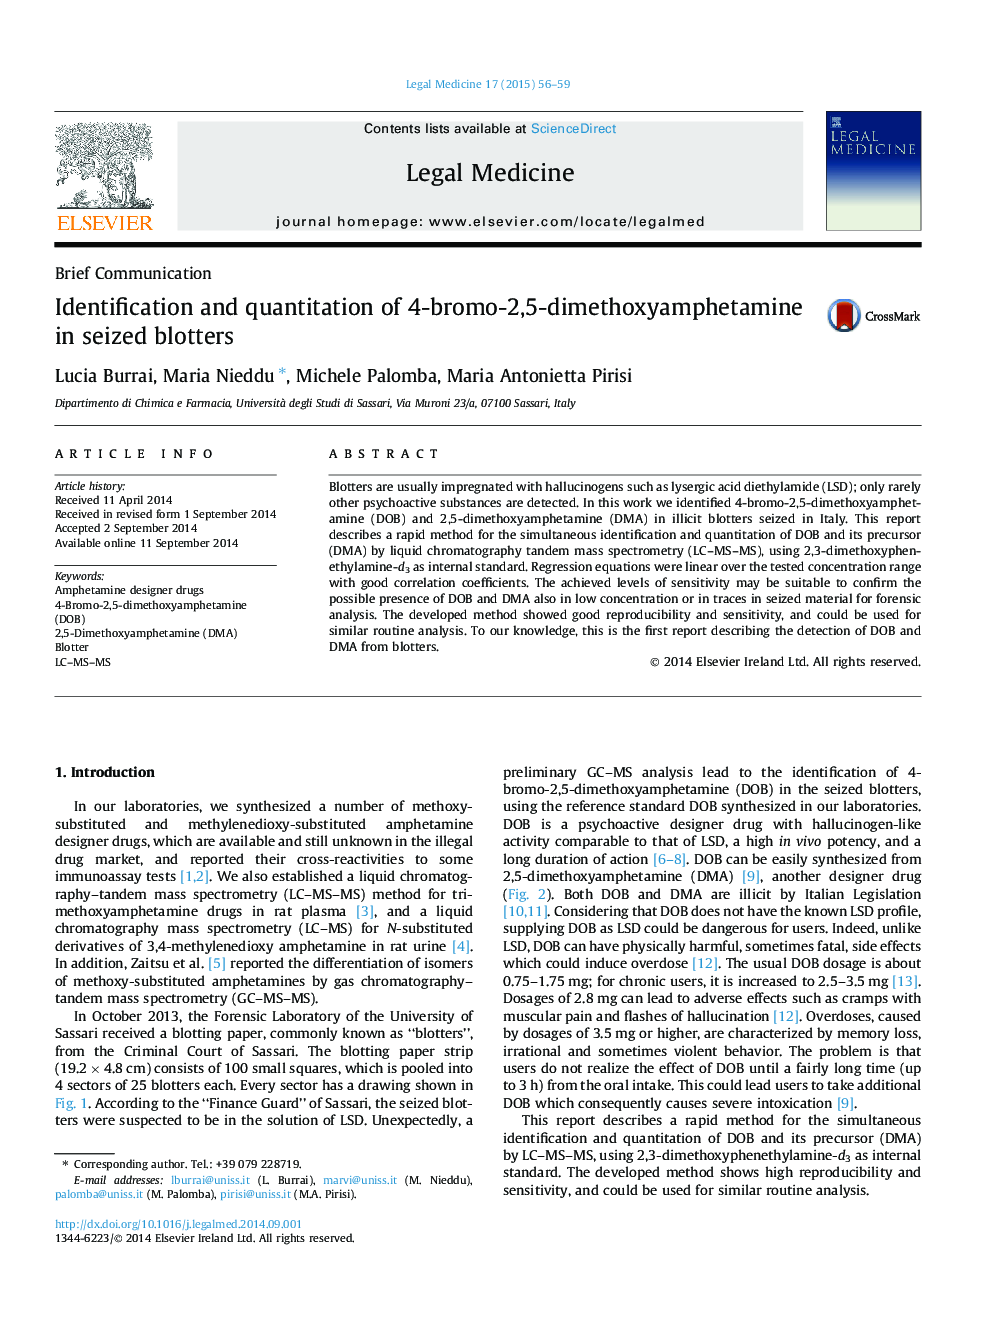 شناسایی و اندازه گیری 4-bromo-2،5-dimethoxy amphetamine در blotters کشف و ضبط شده